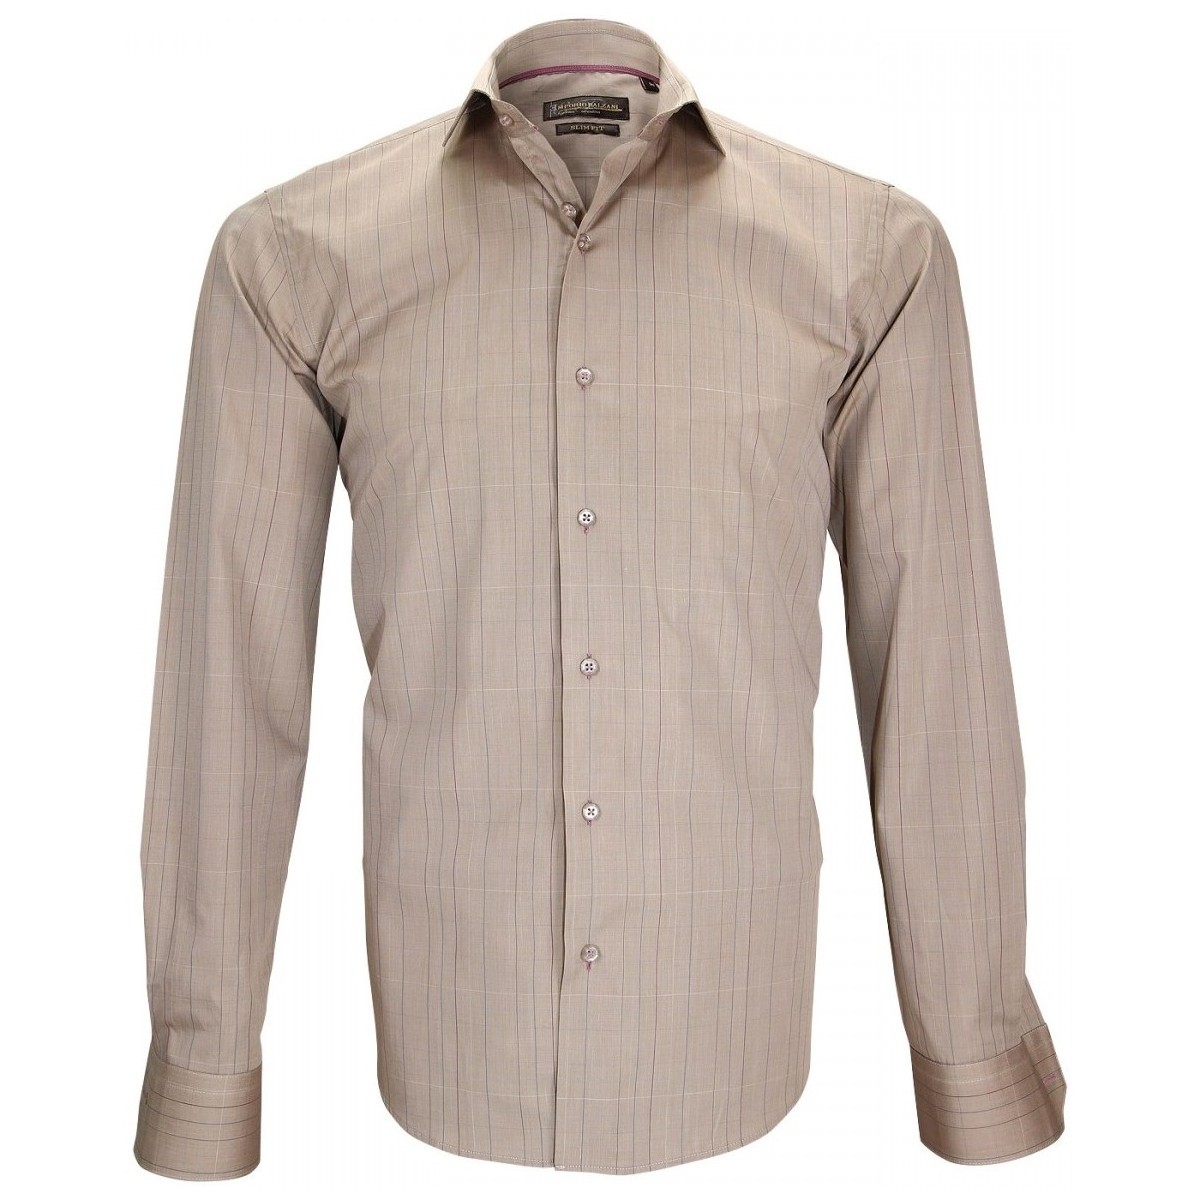 Vêtements Homme Chemises manches longues Emporio Balzani chemise fil a fil settimo beige Beige